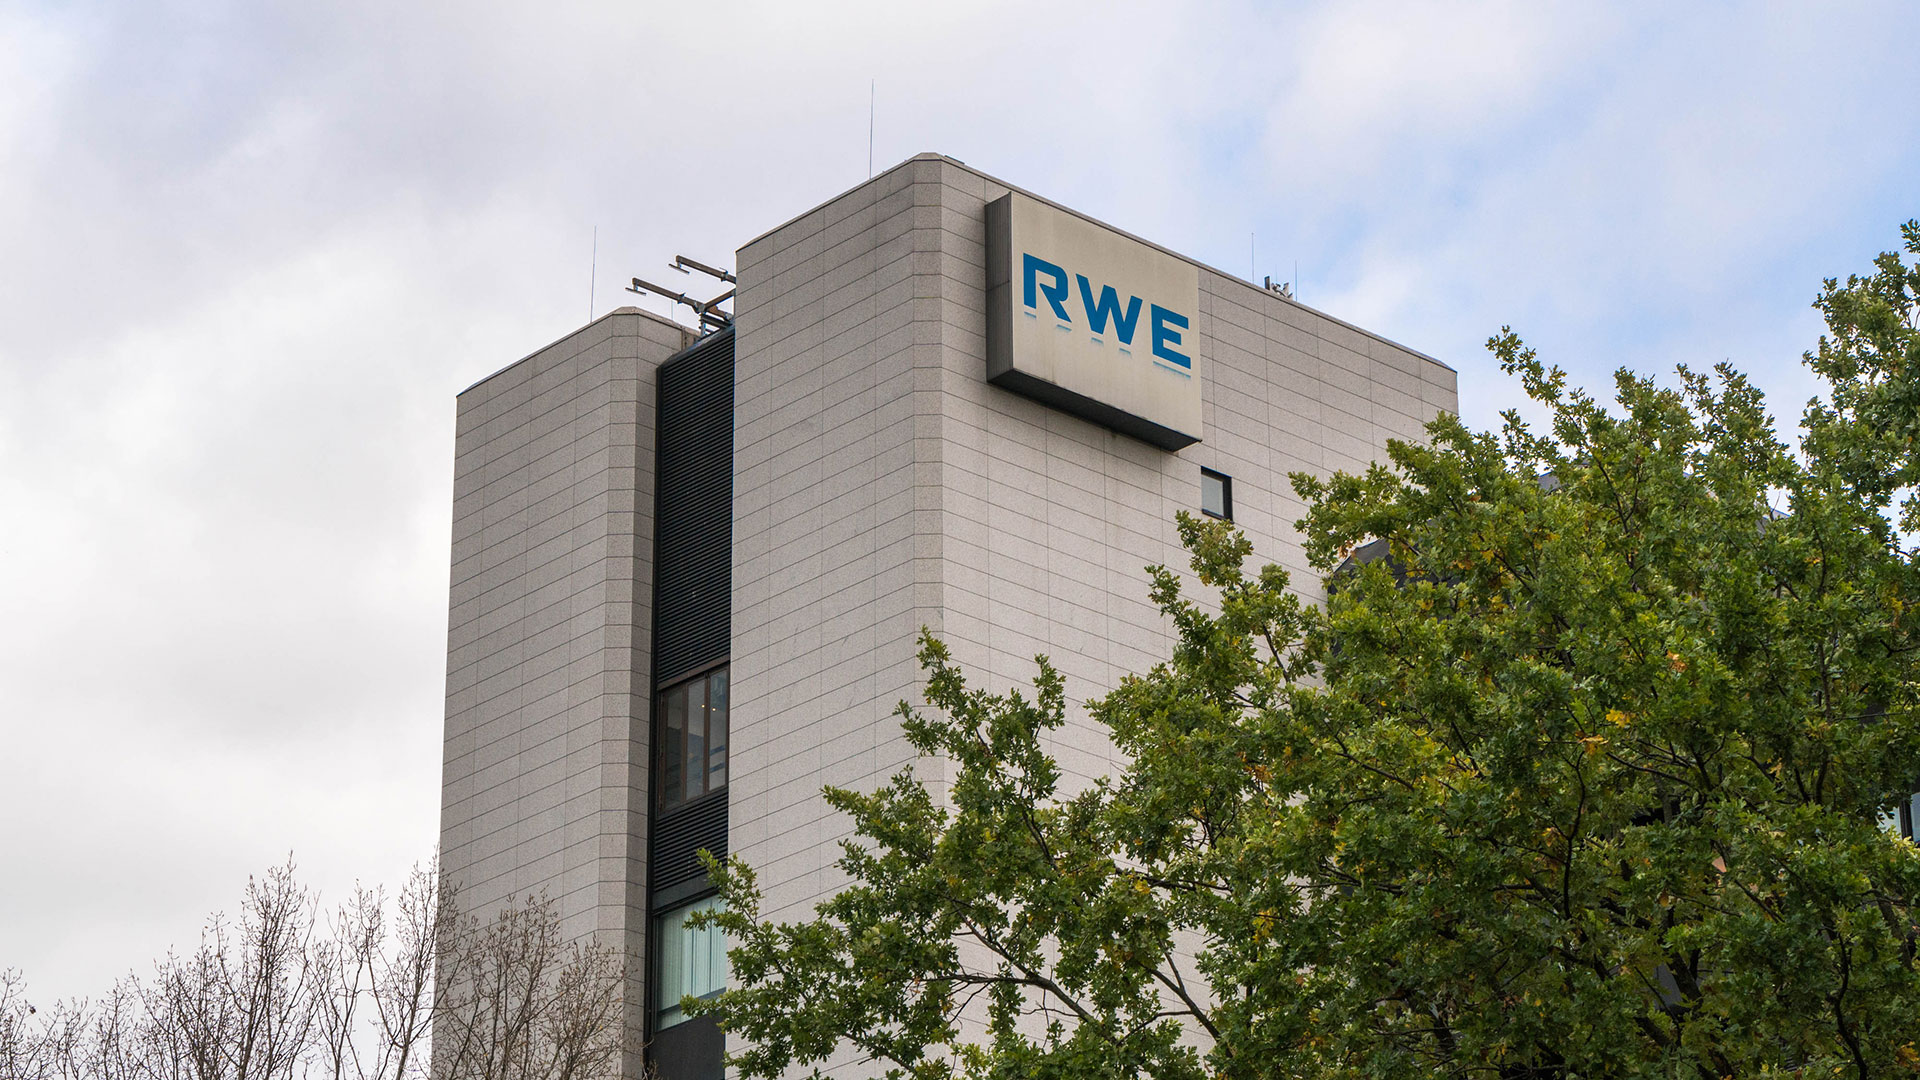 RWE übertrifft Prognose deutlich – Aktie nähert sich Mehrjahreshoch